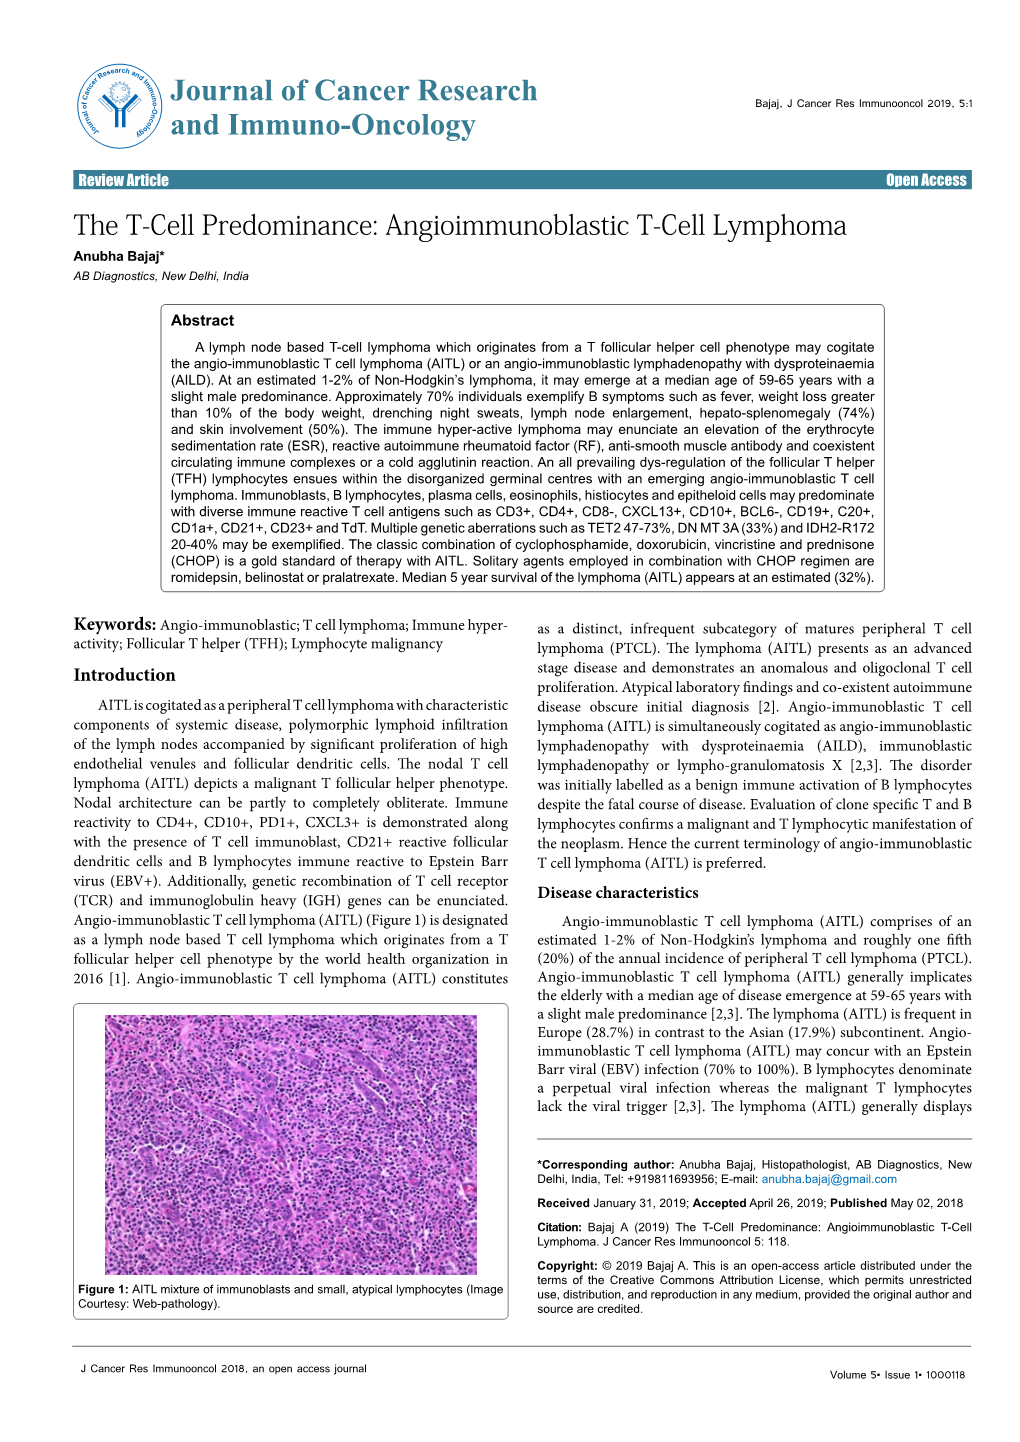 Angioimmunoblastic T-Cell Lymphoma Anubha Bajaj* AB Diagnostics, New Delhi, India